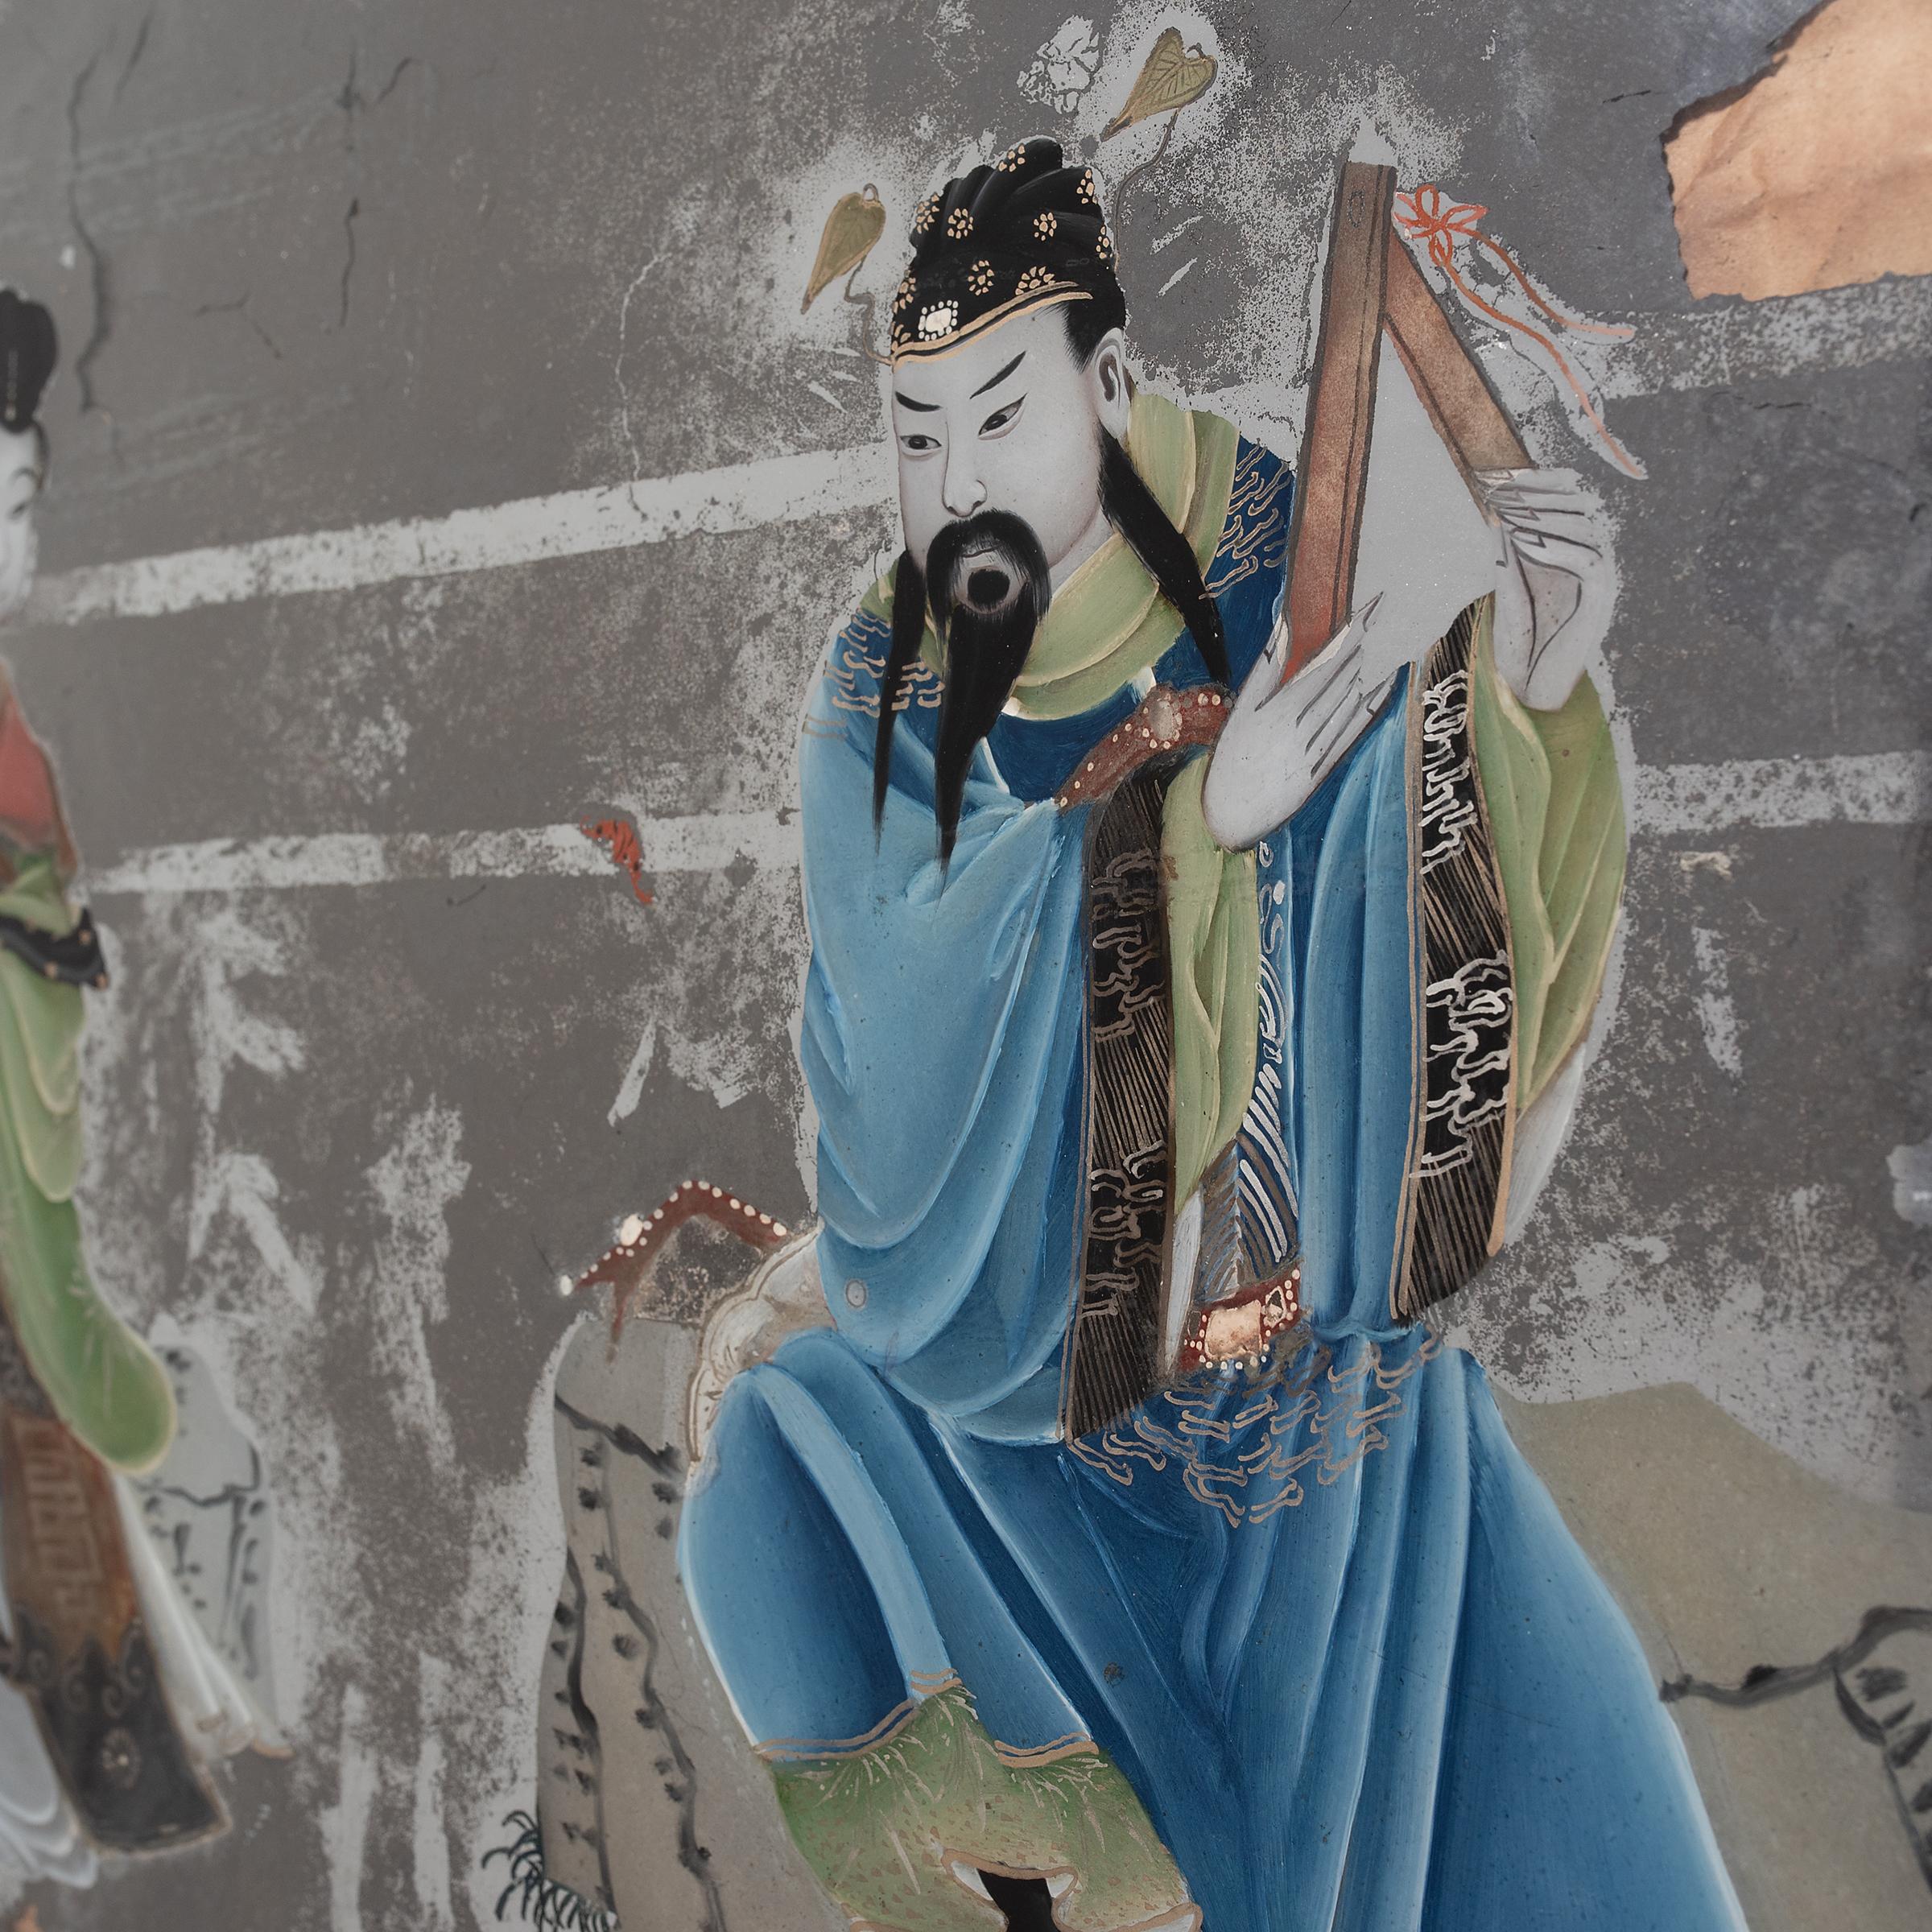 Popularisée sous la dynastie Qing, la peinture sur verre à l'envers exige de l'artiste qu'il travaille essentiellement à l'envers, en commençant par les détails et les ombres avant d'ajouter la couleur et la forme. Cette technique exigeante, qui ne